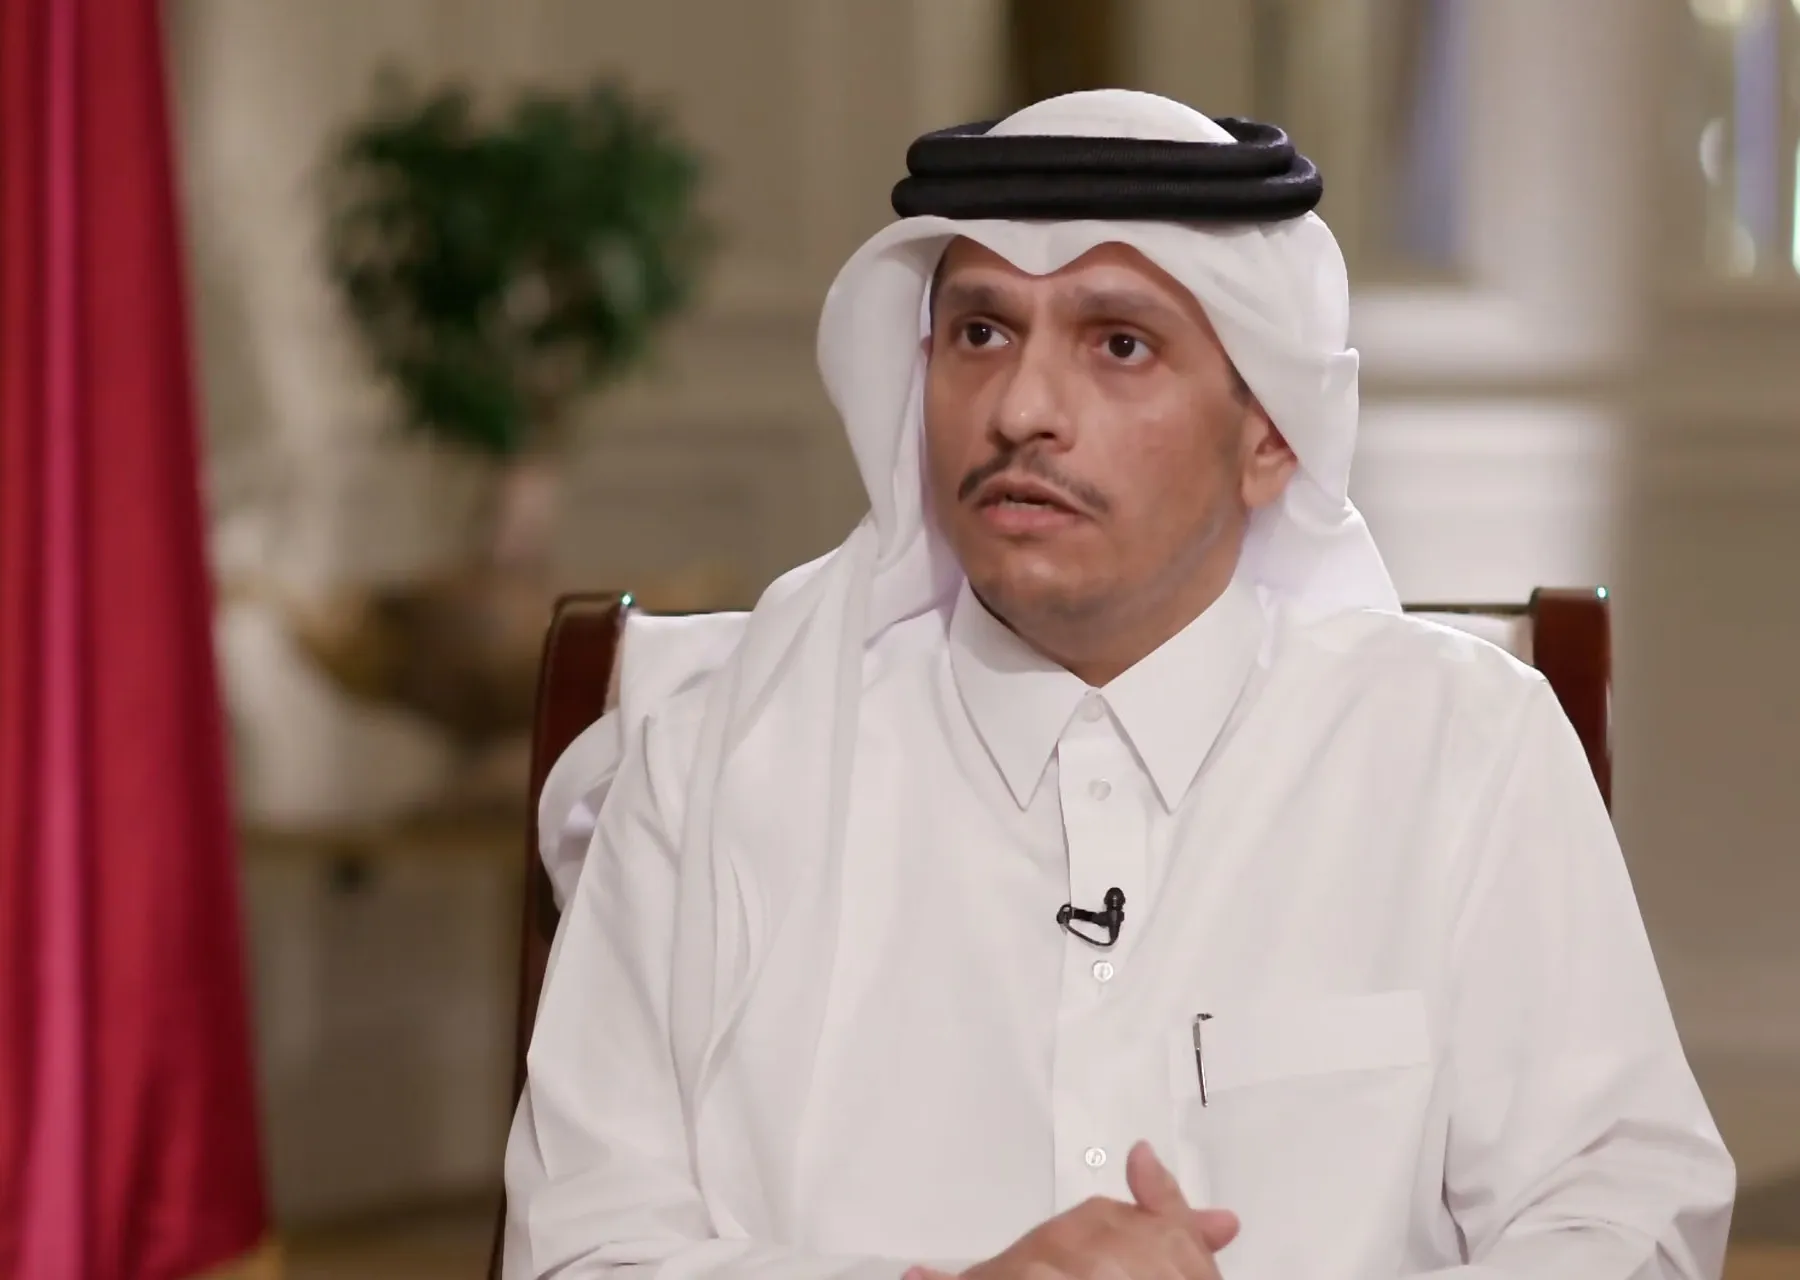 وزير خارجية قطر: لانريد الخروج عن الإجماع العربي بشأن عودة سوريا لـ "الجامعة العربية"